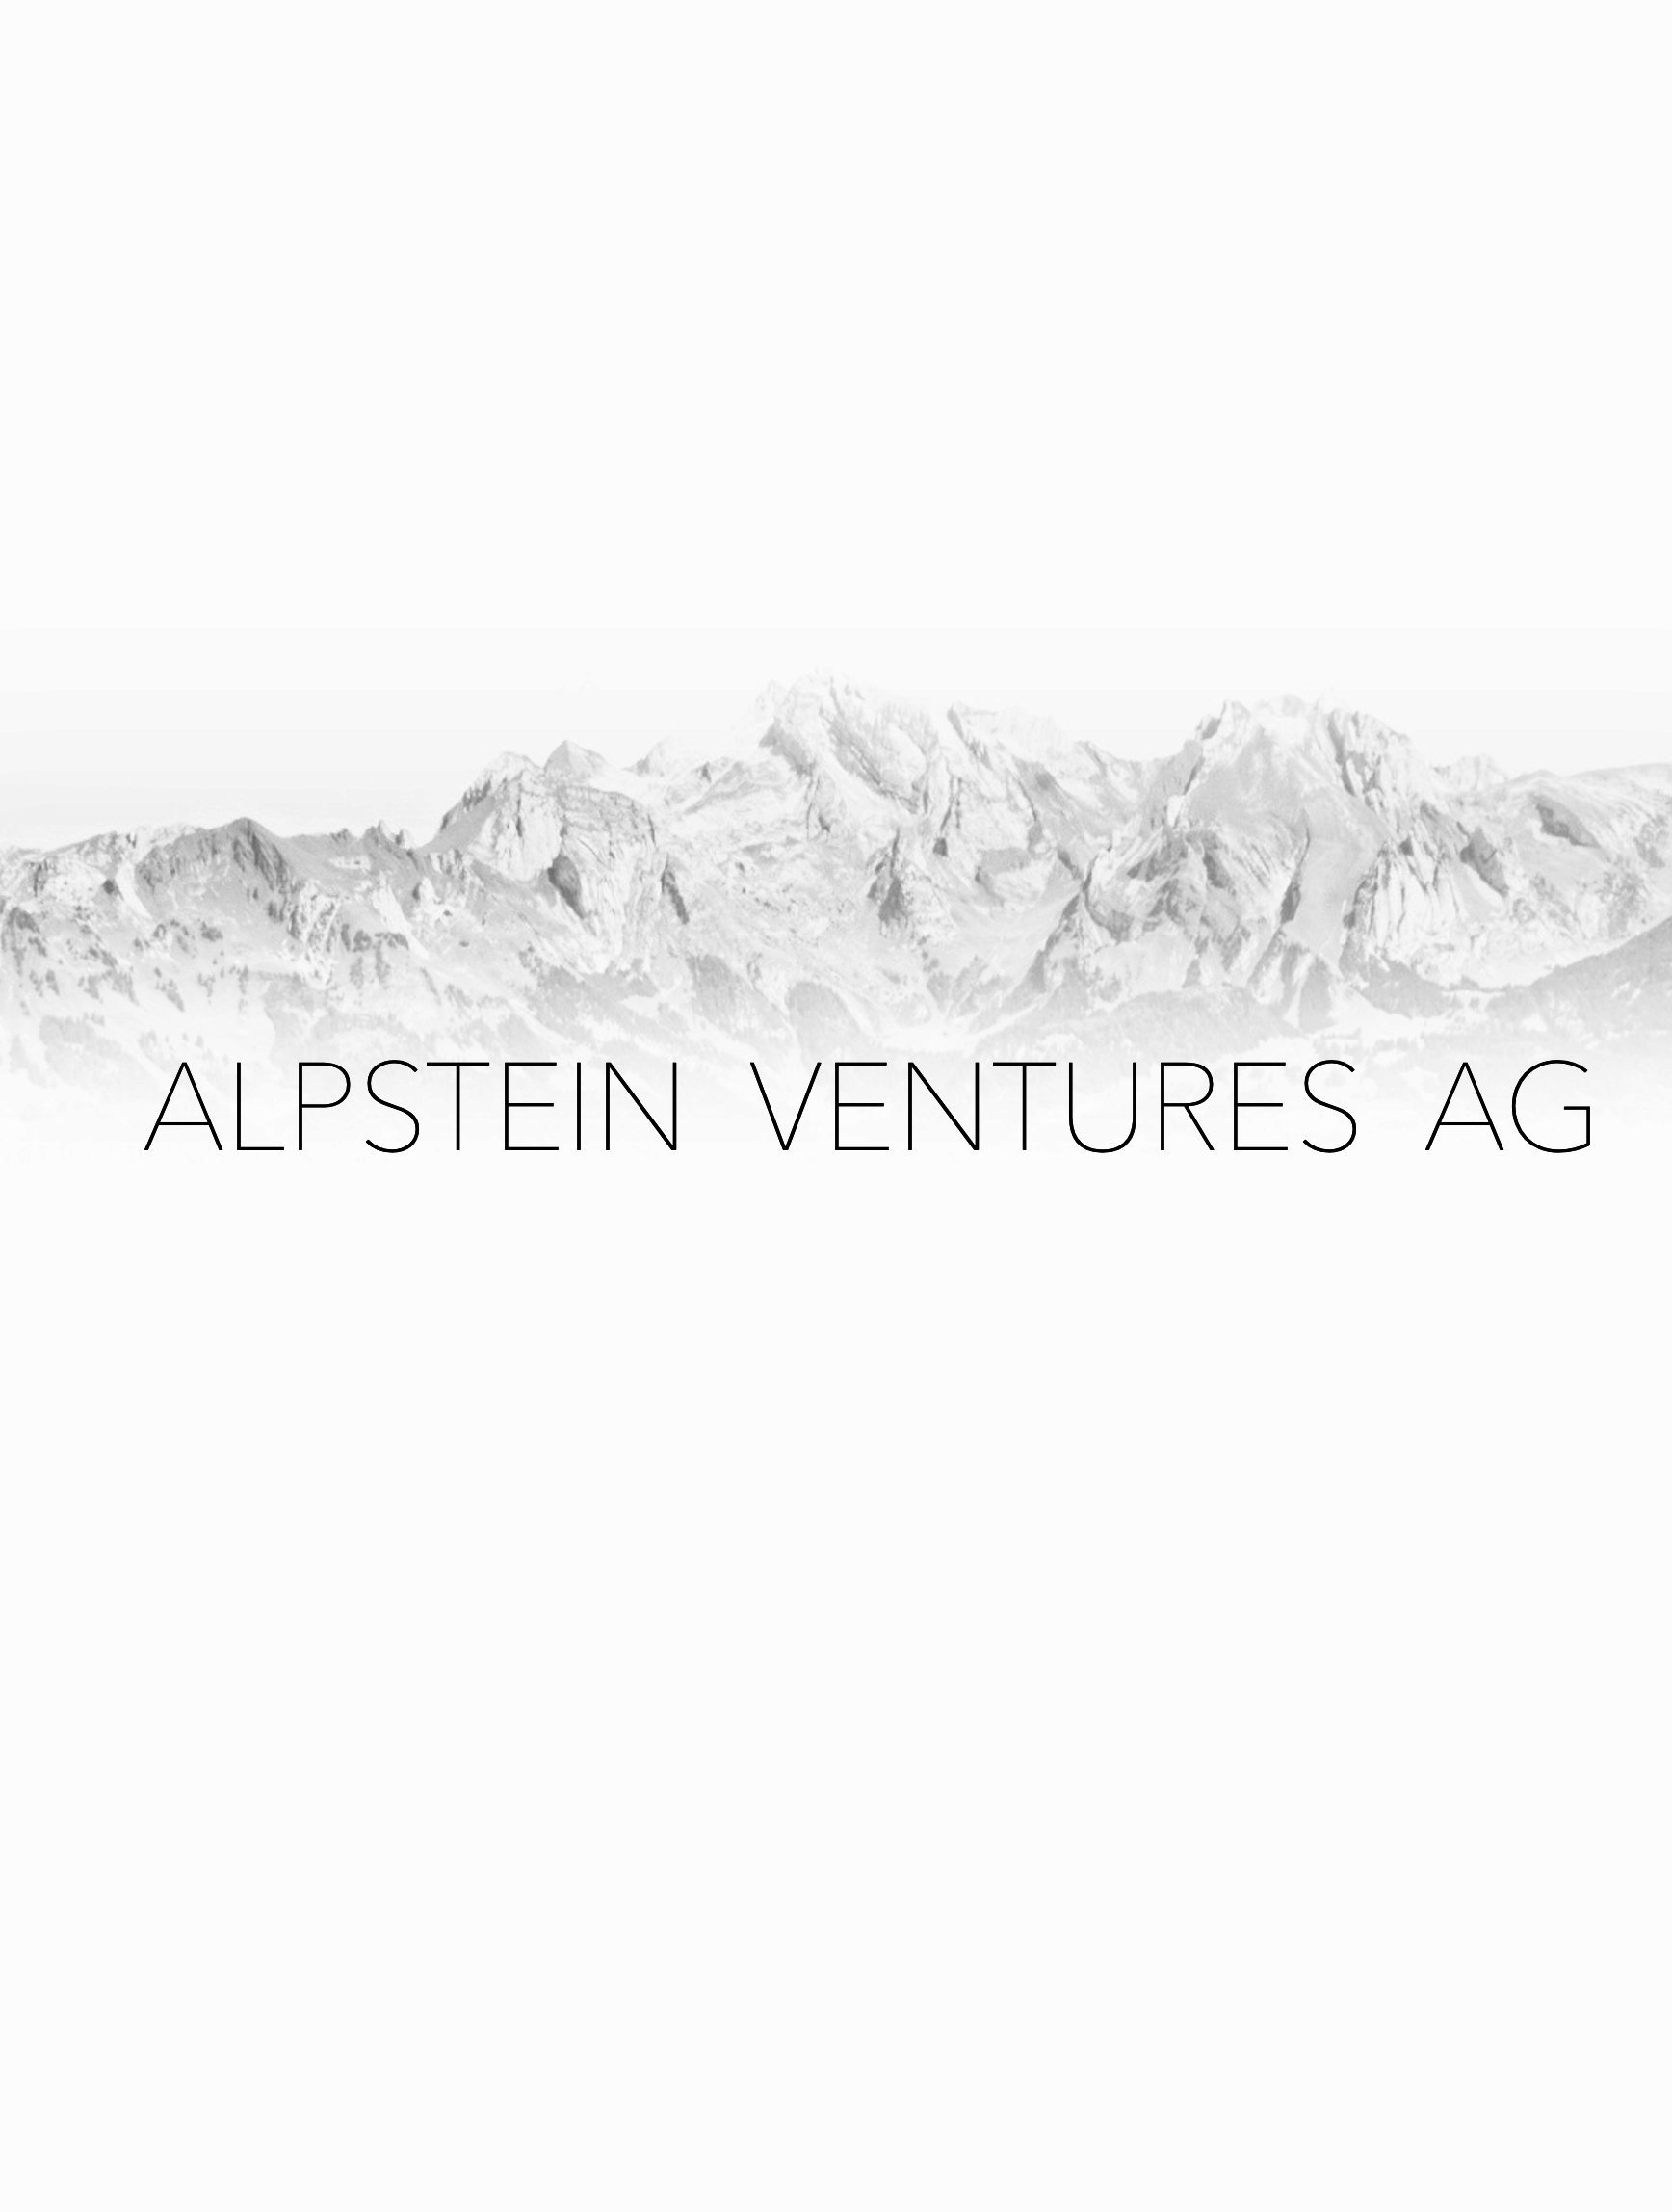 Alpstein Ventures AG